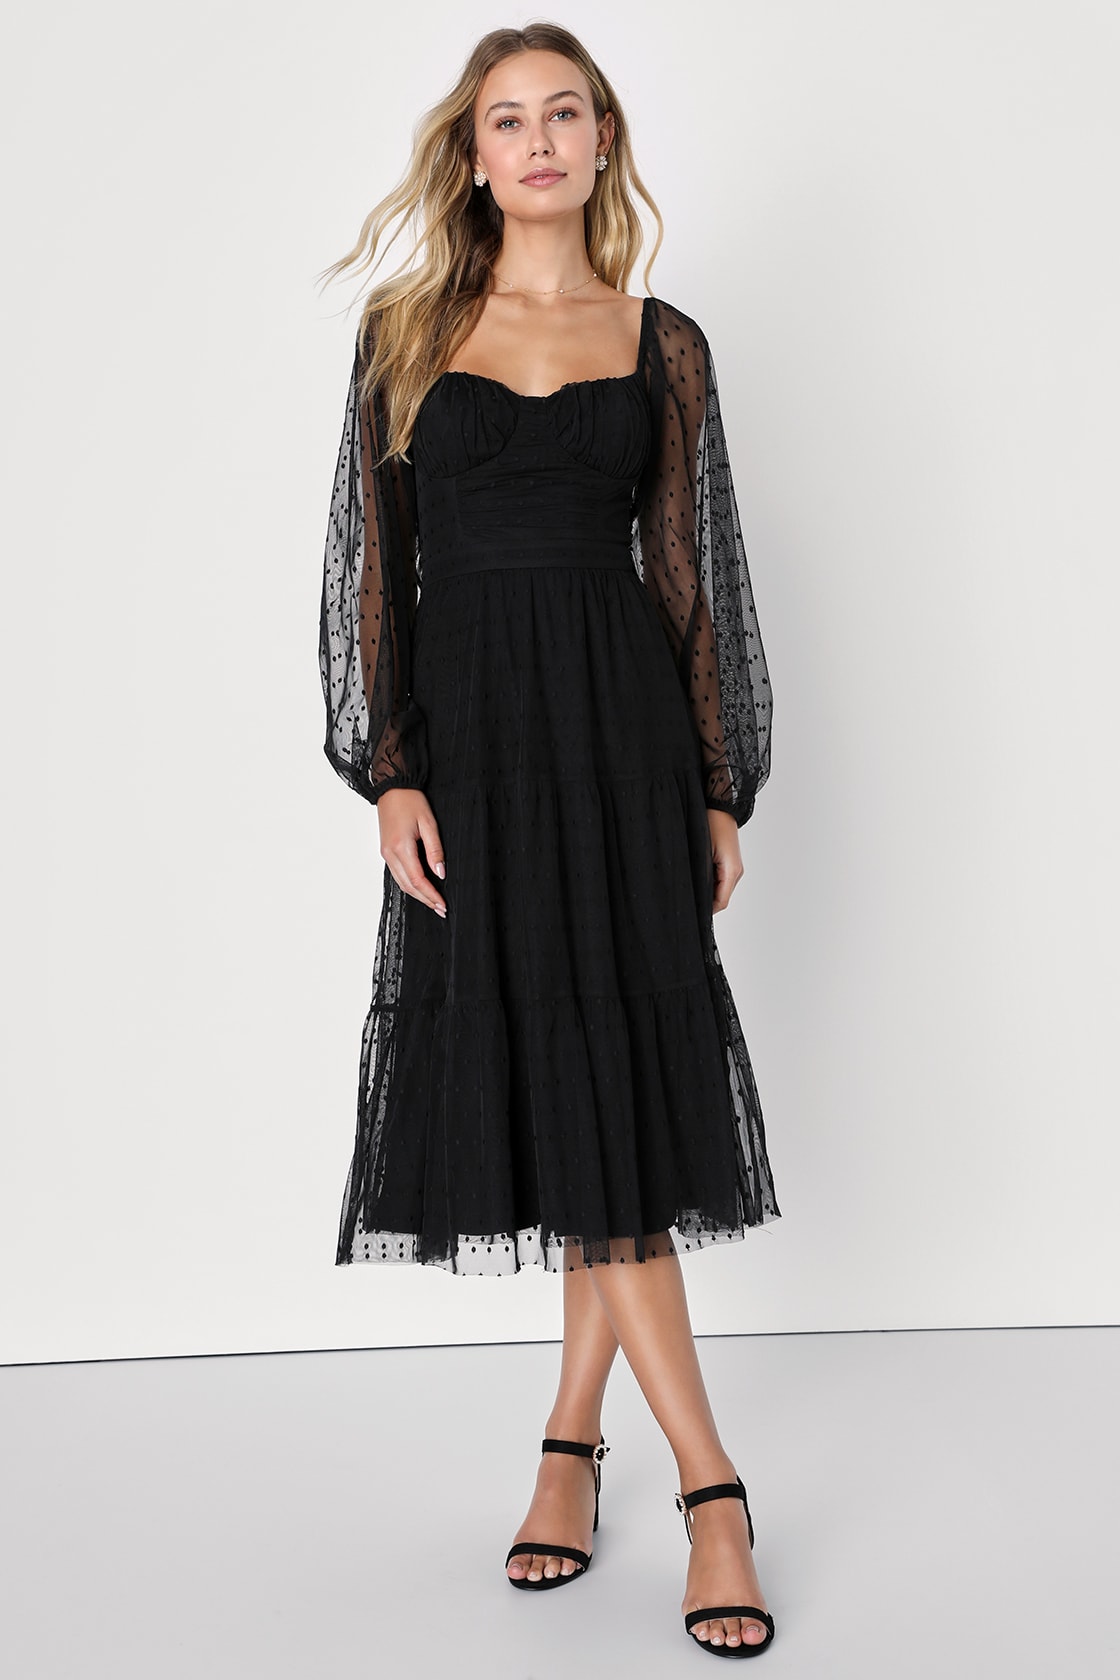 Affectionate Aura Black Swiss Dot Tiered Bustier Midi Dress